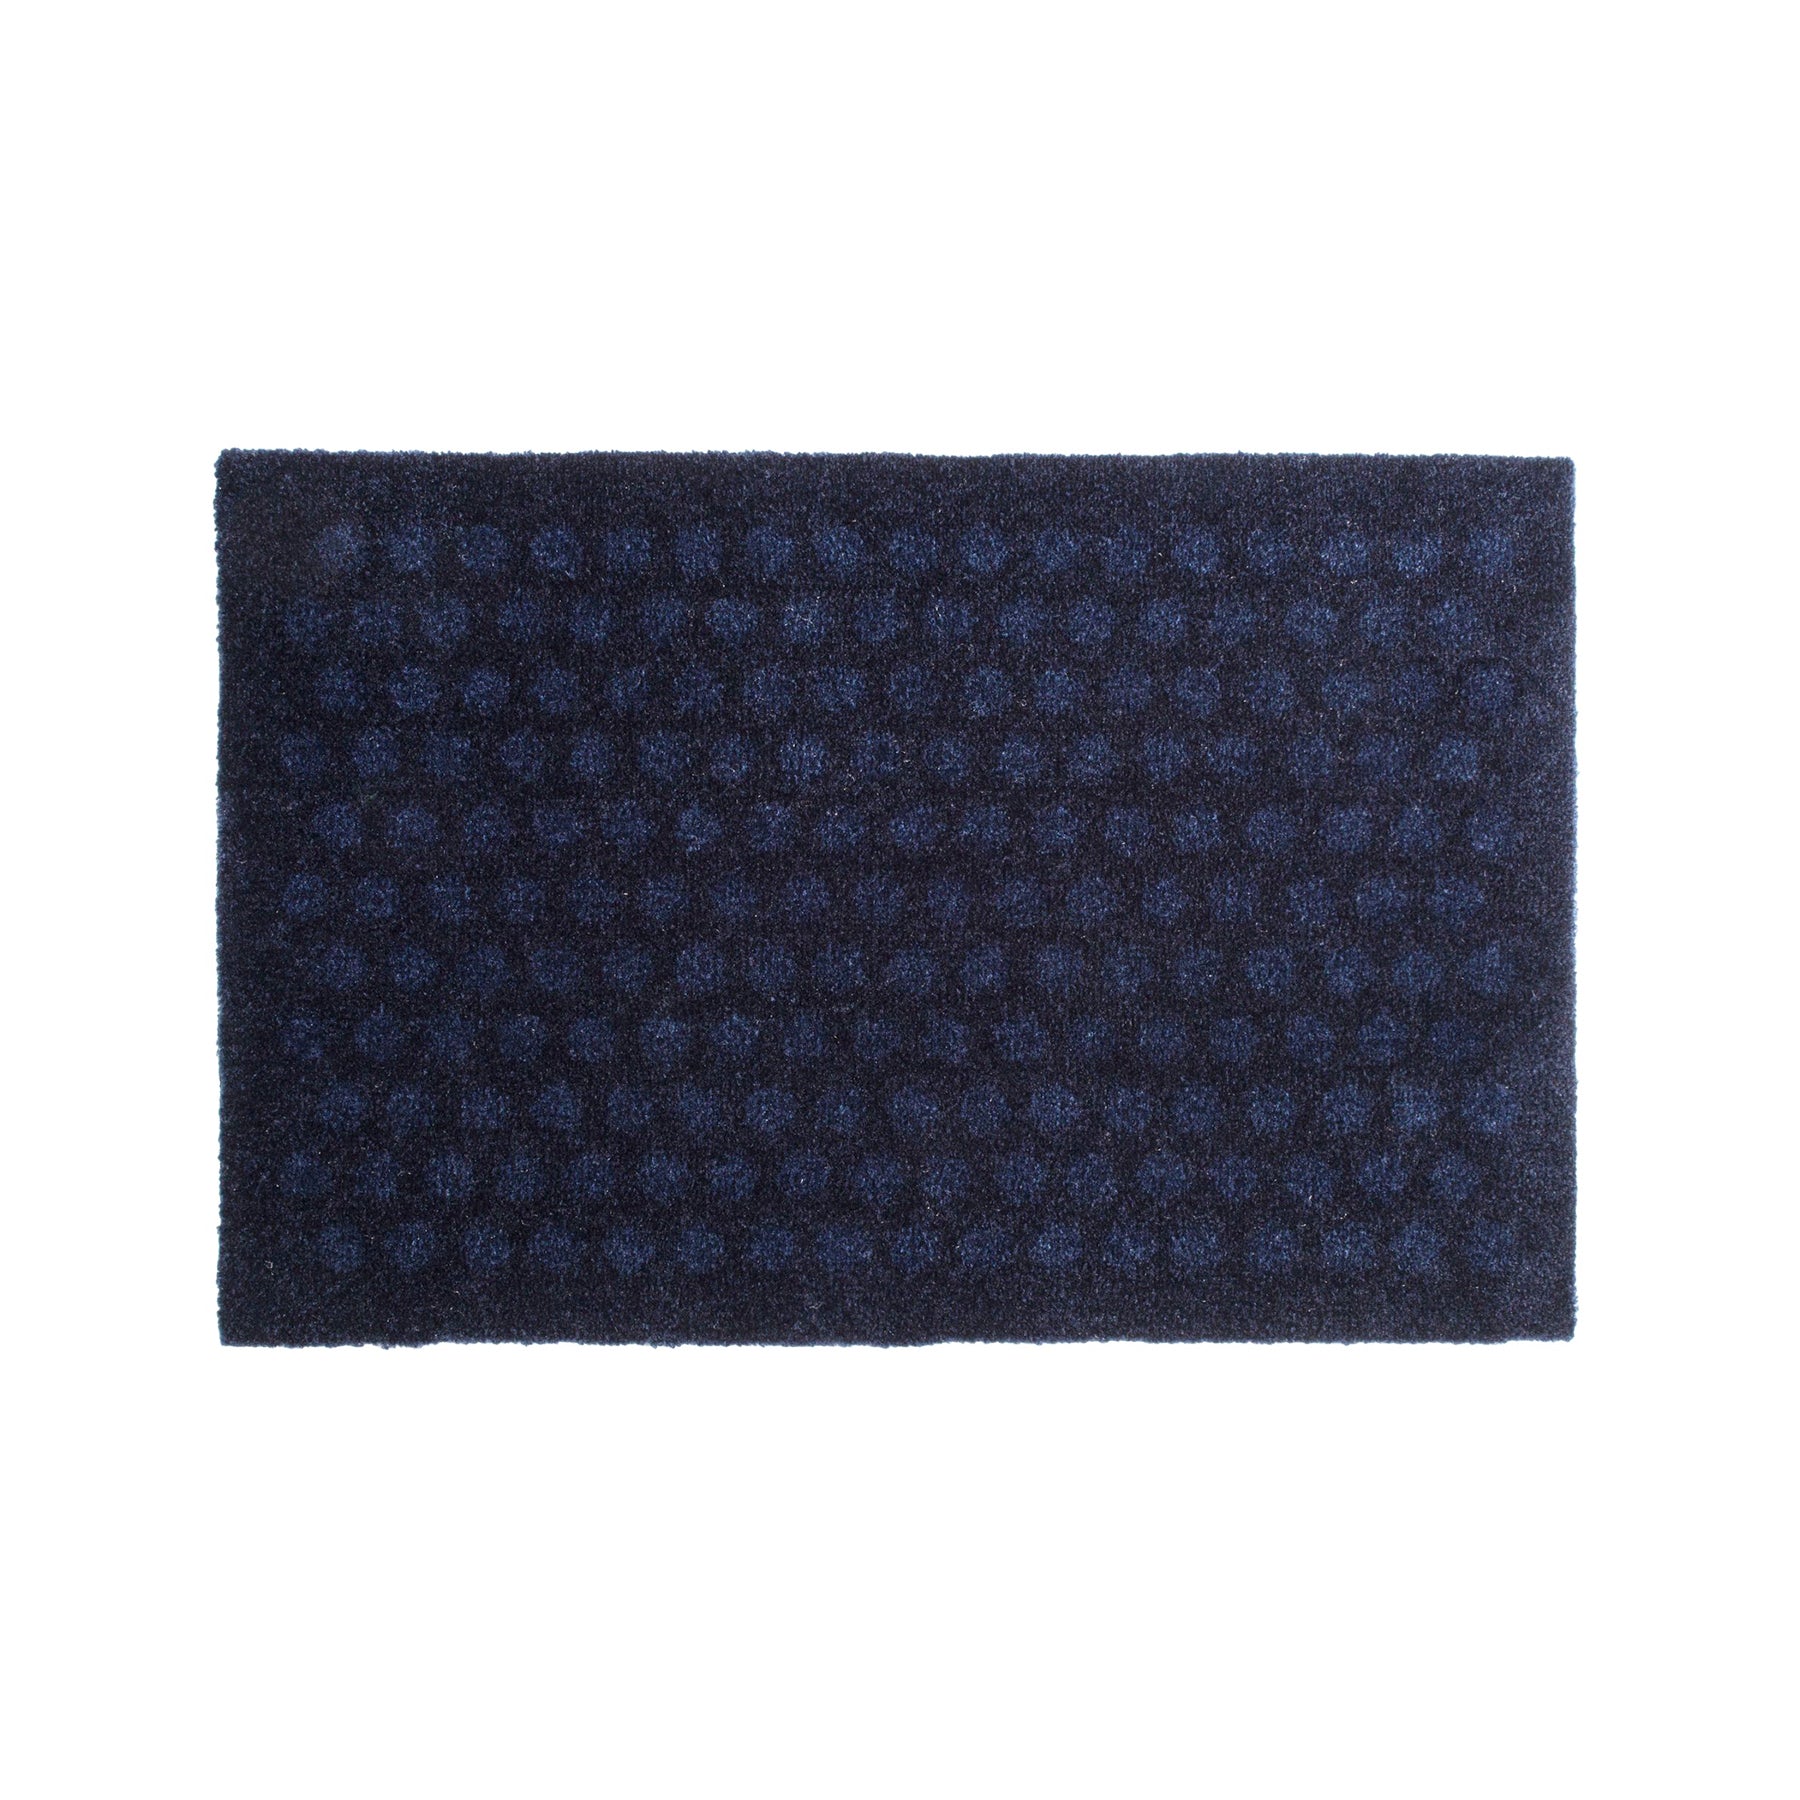 Bodenmatte 40 x 60 cm - Punkte/Blau